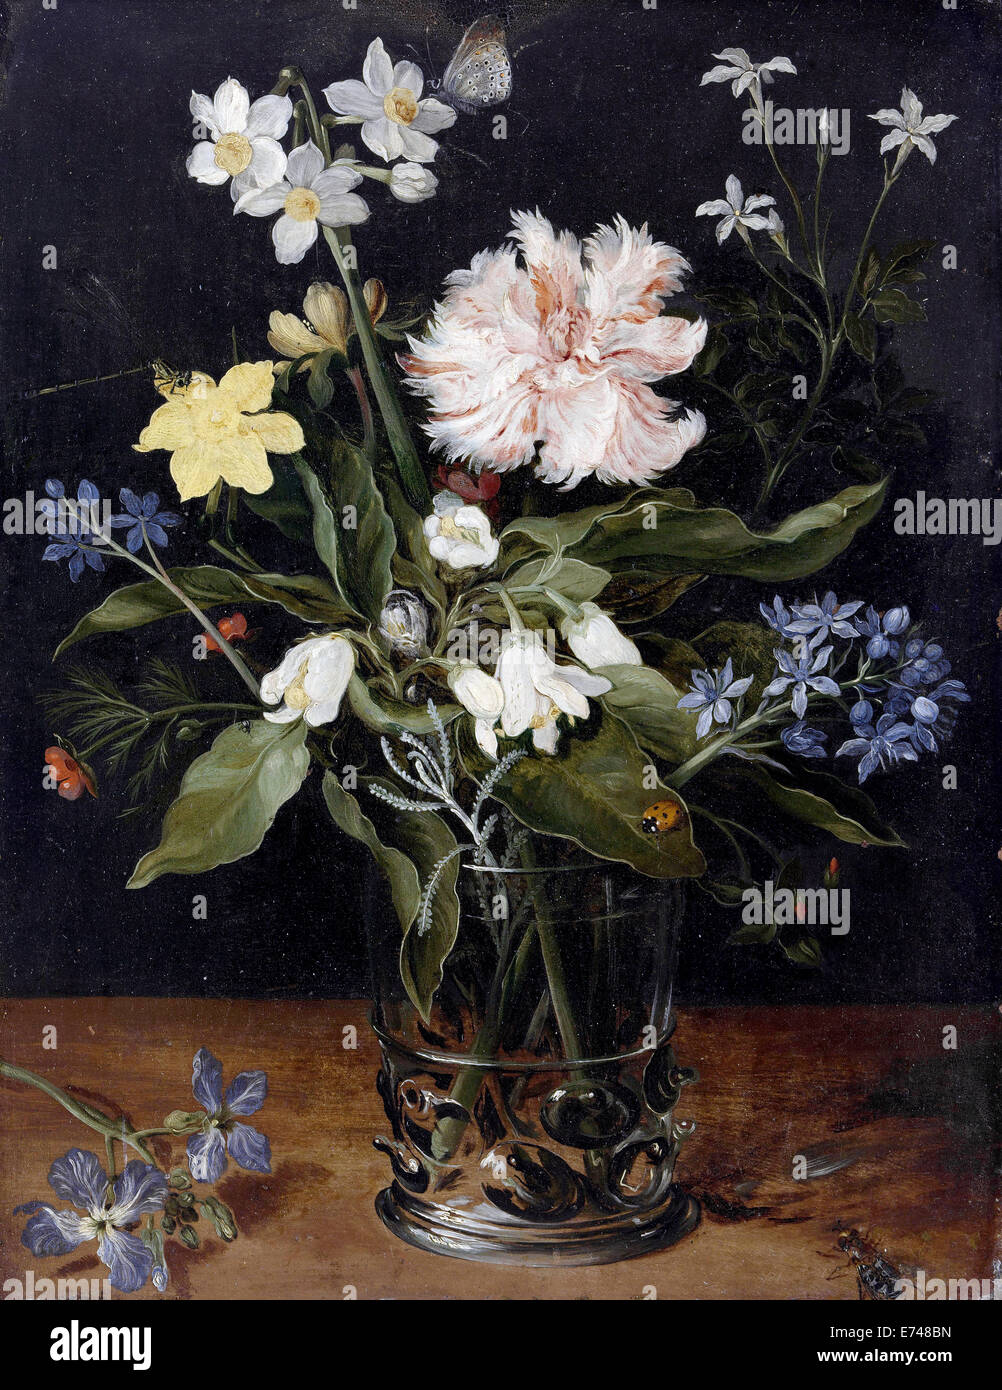 Stillleben mit Blumen in einem Glas - Jan Brueghel, 1625-1630 Stockfoto